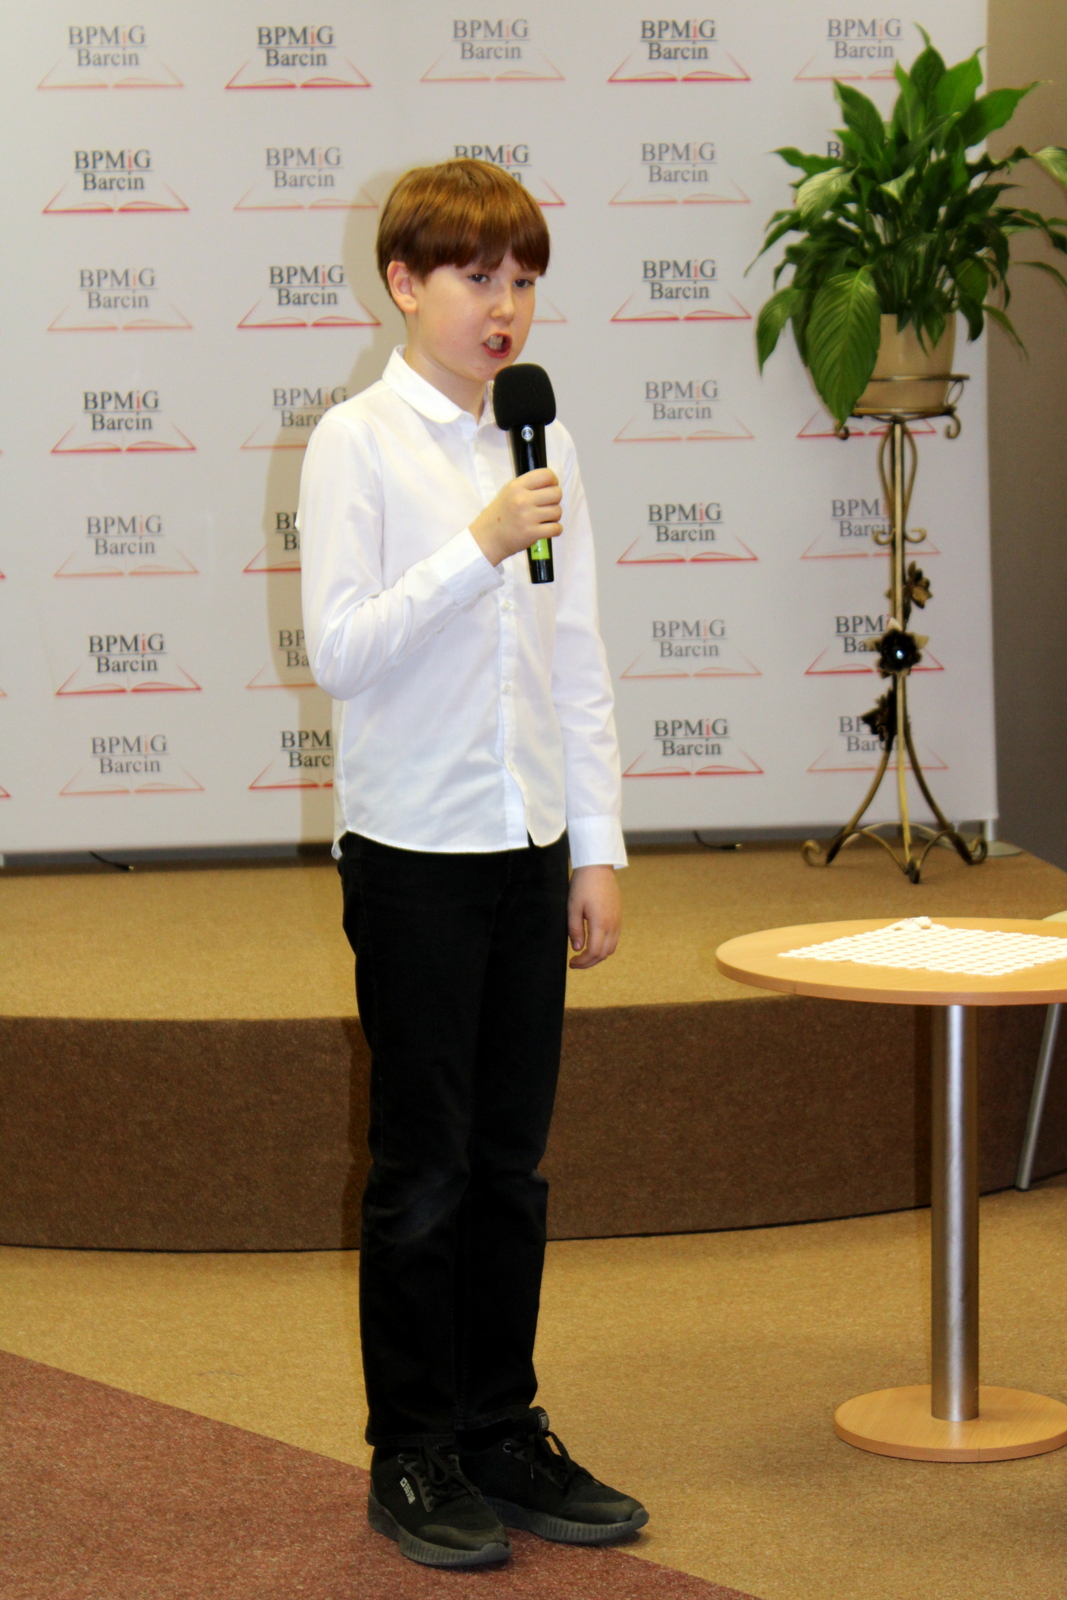 Uczestnik konkursu, chłopiec o rudych włosach ubrany w białą koszulę, czarne spodnie i czarne adidasy, trzyma w ręku mikrofon.